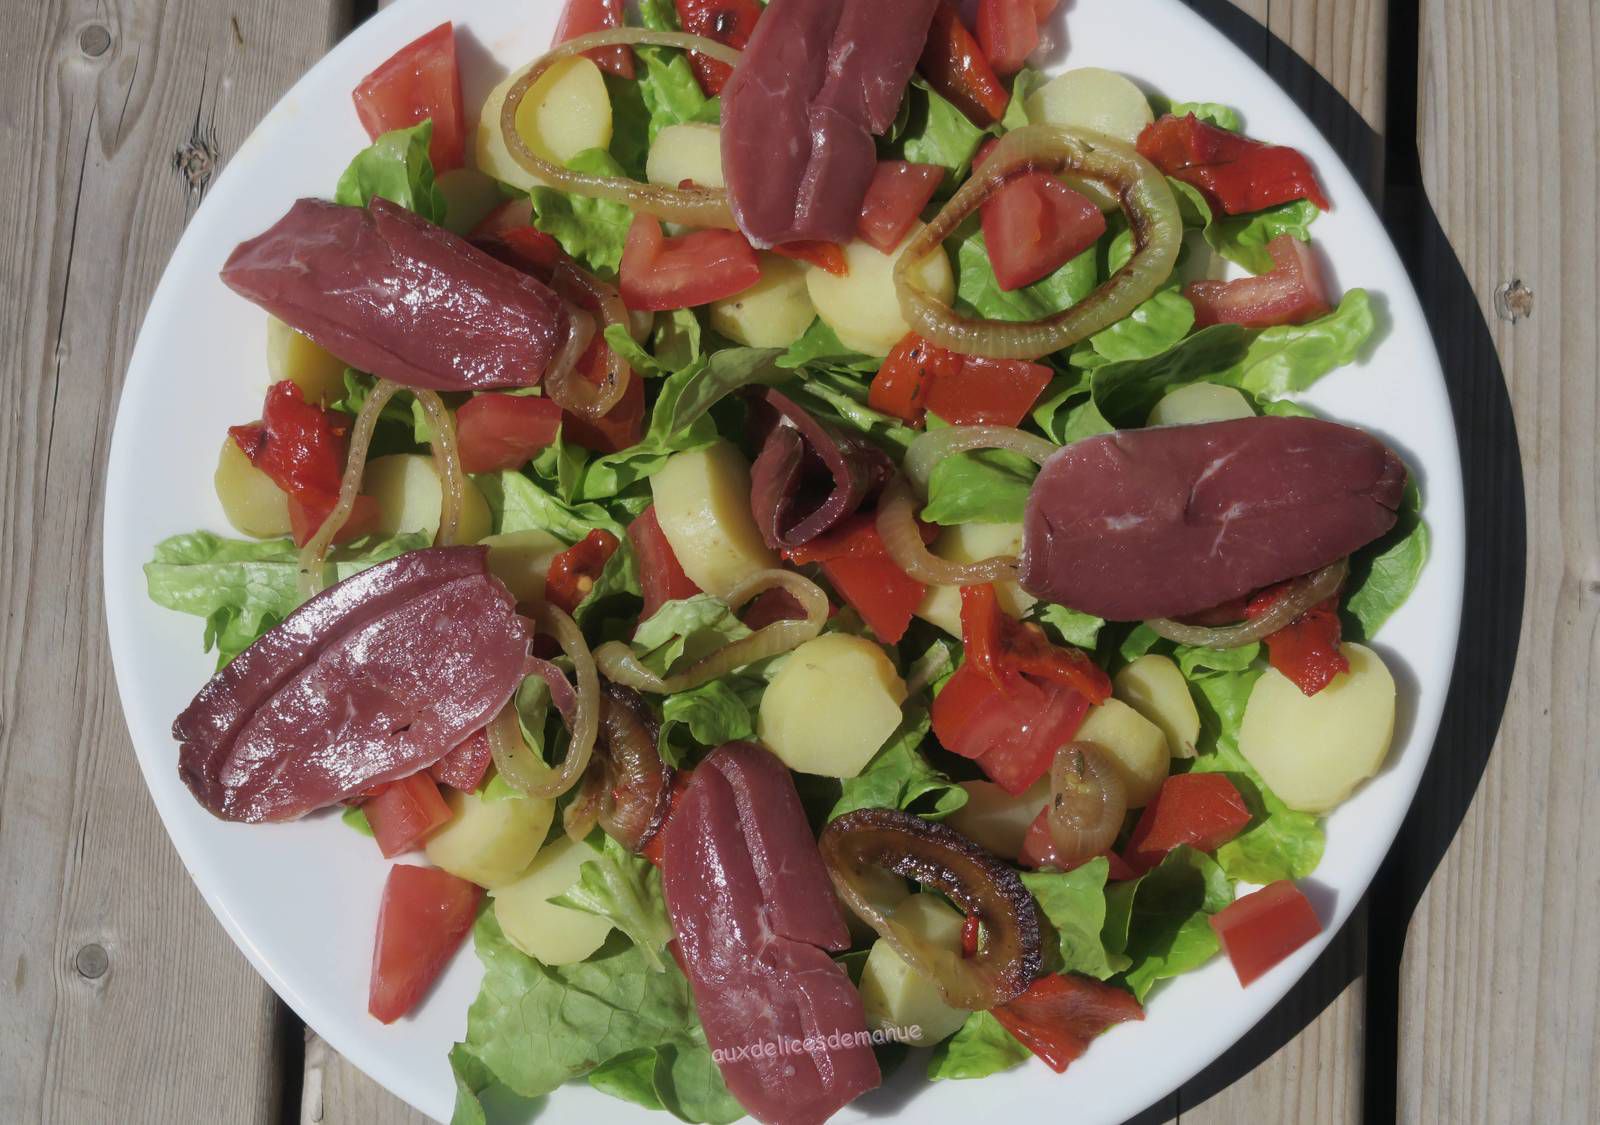 salade, salade composée, salade complète, pommes de terre, tomate, poivron, magret de canard, magret fumé, magret séché 